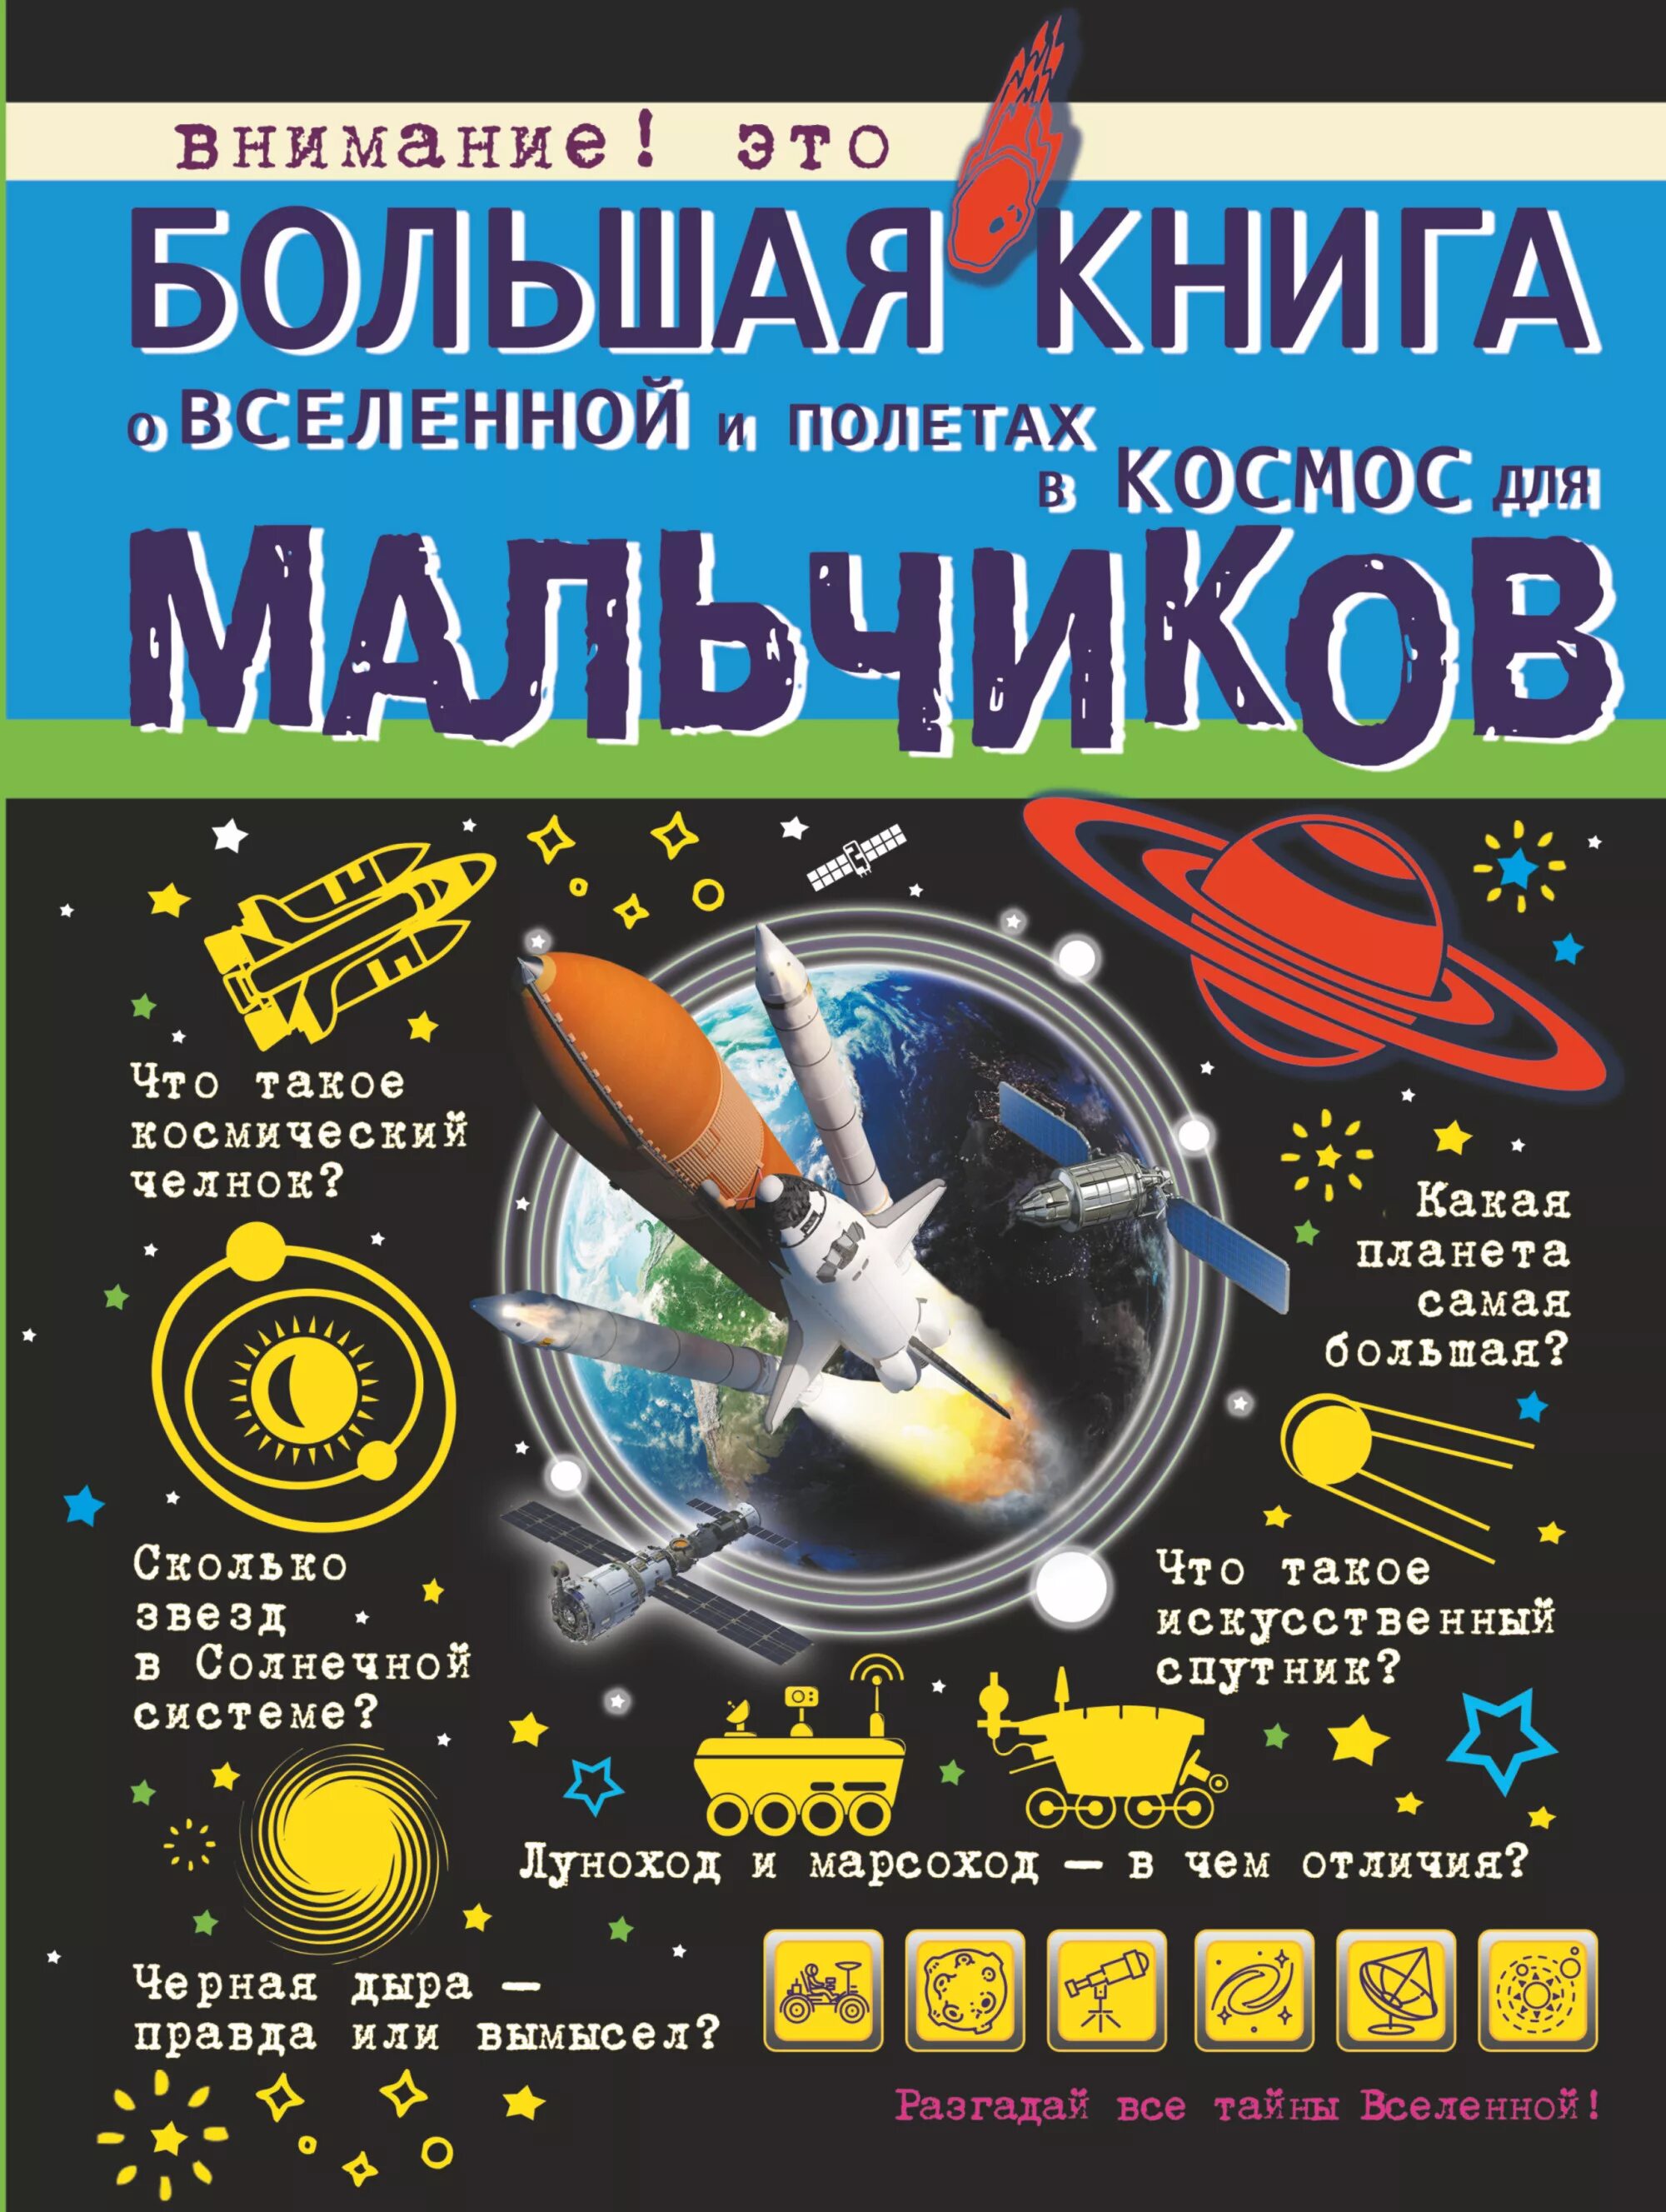 Филиппова м.д., Ликсо в.в., Кошевар д.в. "большая книга о Вселенной и полетах в космос для мальчиков". Детские книги про космос. Книги о космосе для детей. Сколько книг в космосе